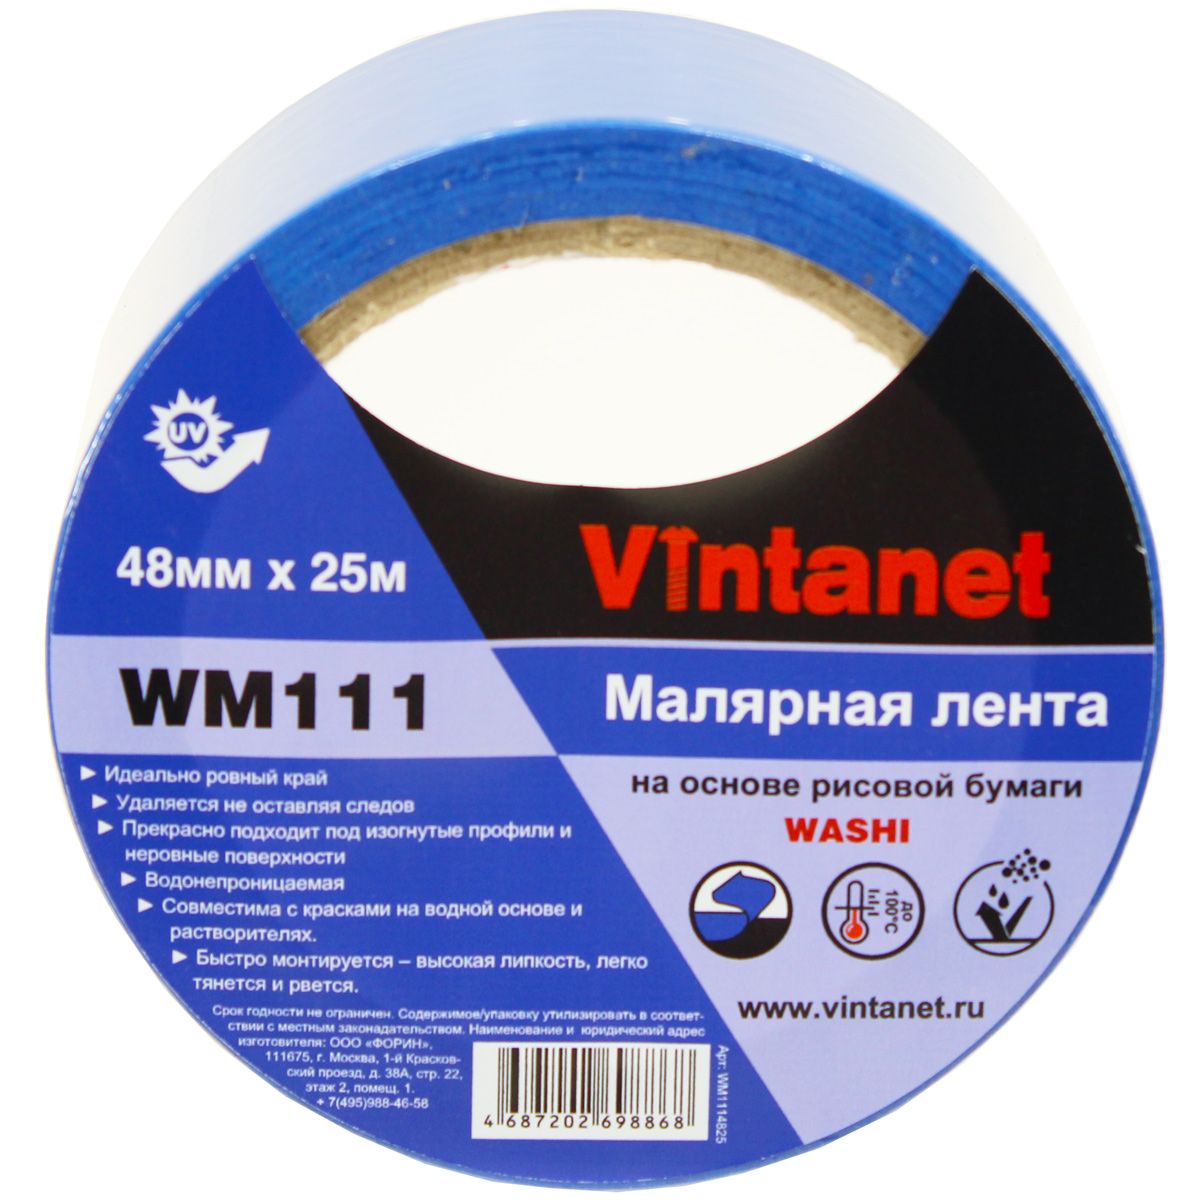 Лента малярная на основе рисовой бумаги Washi, Vintanet WM111, 48мм х 25м, WM1114825 бумага ная односторонняя